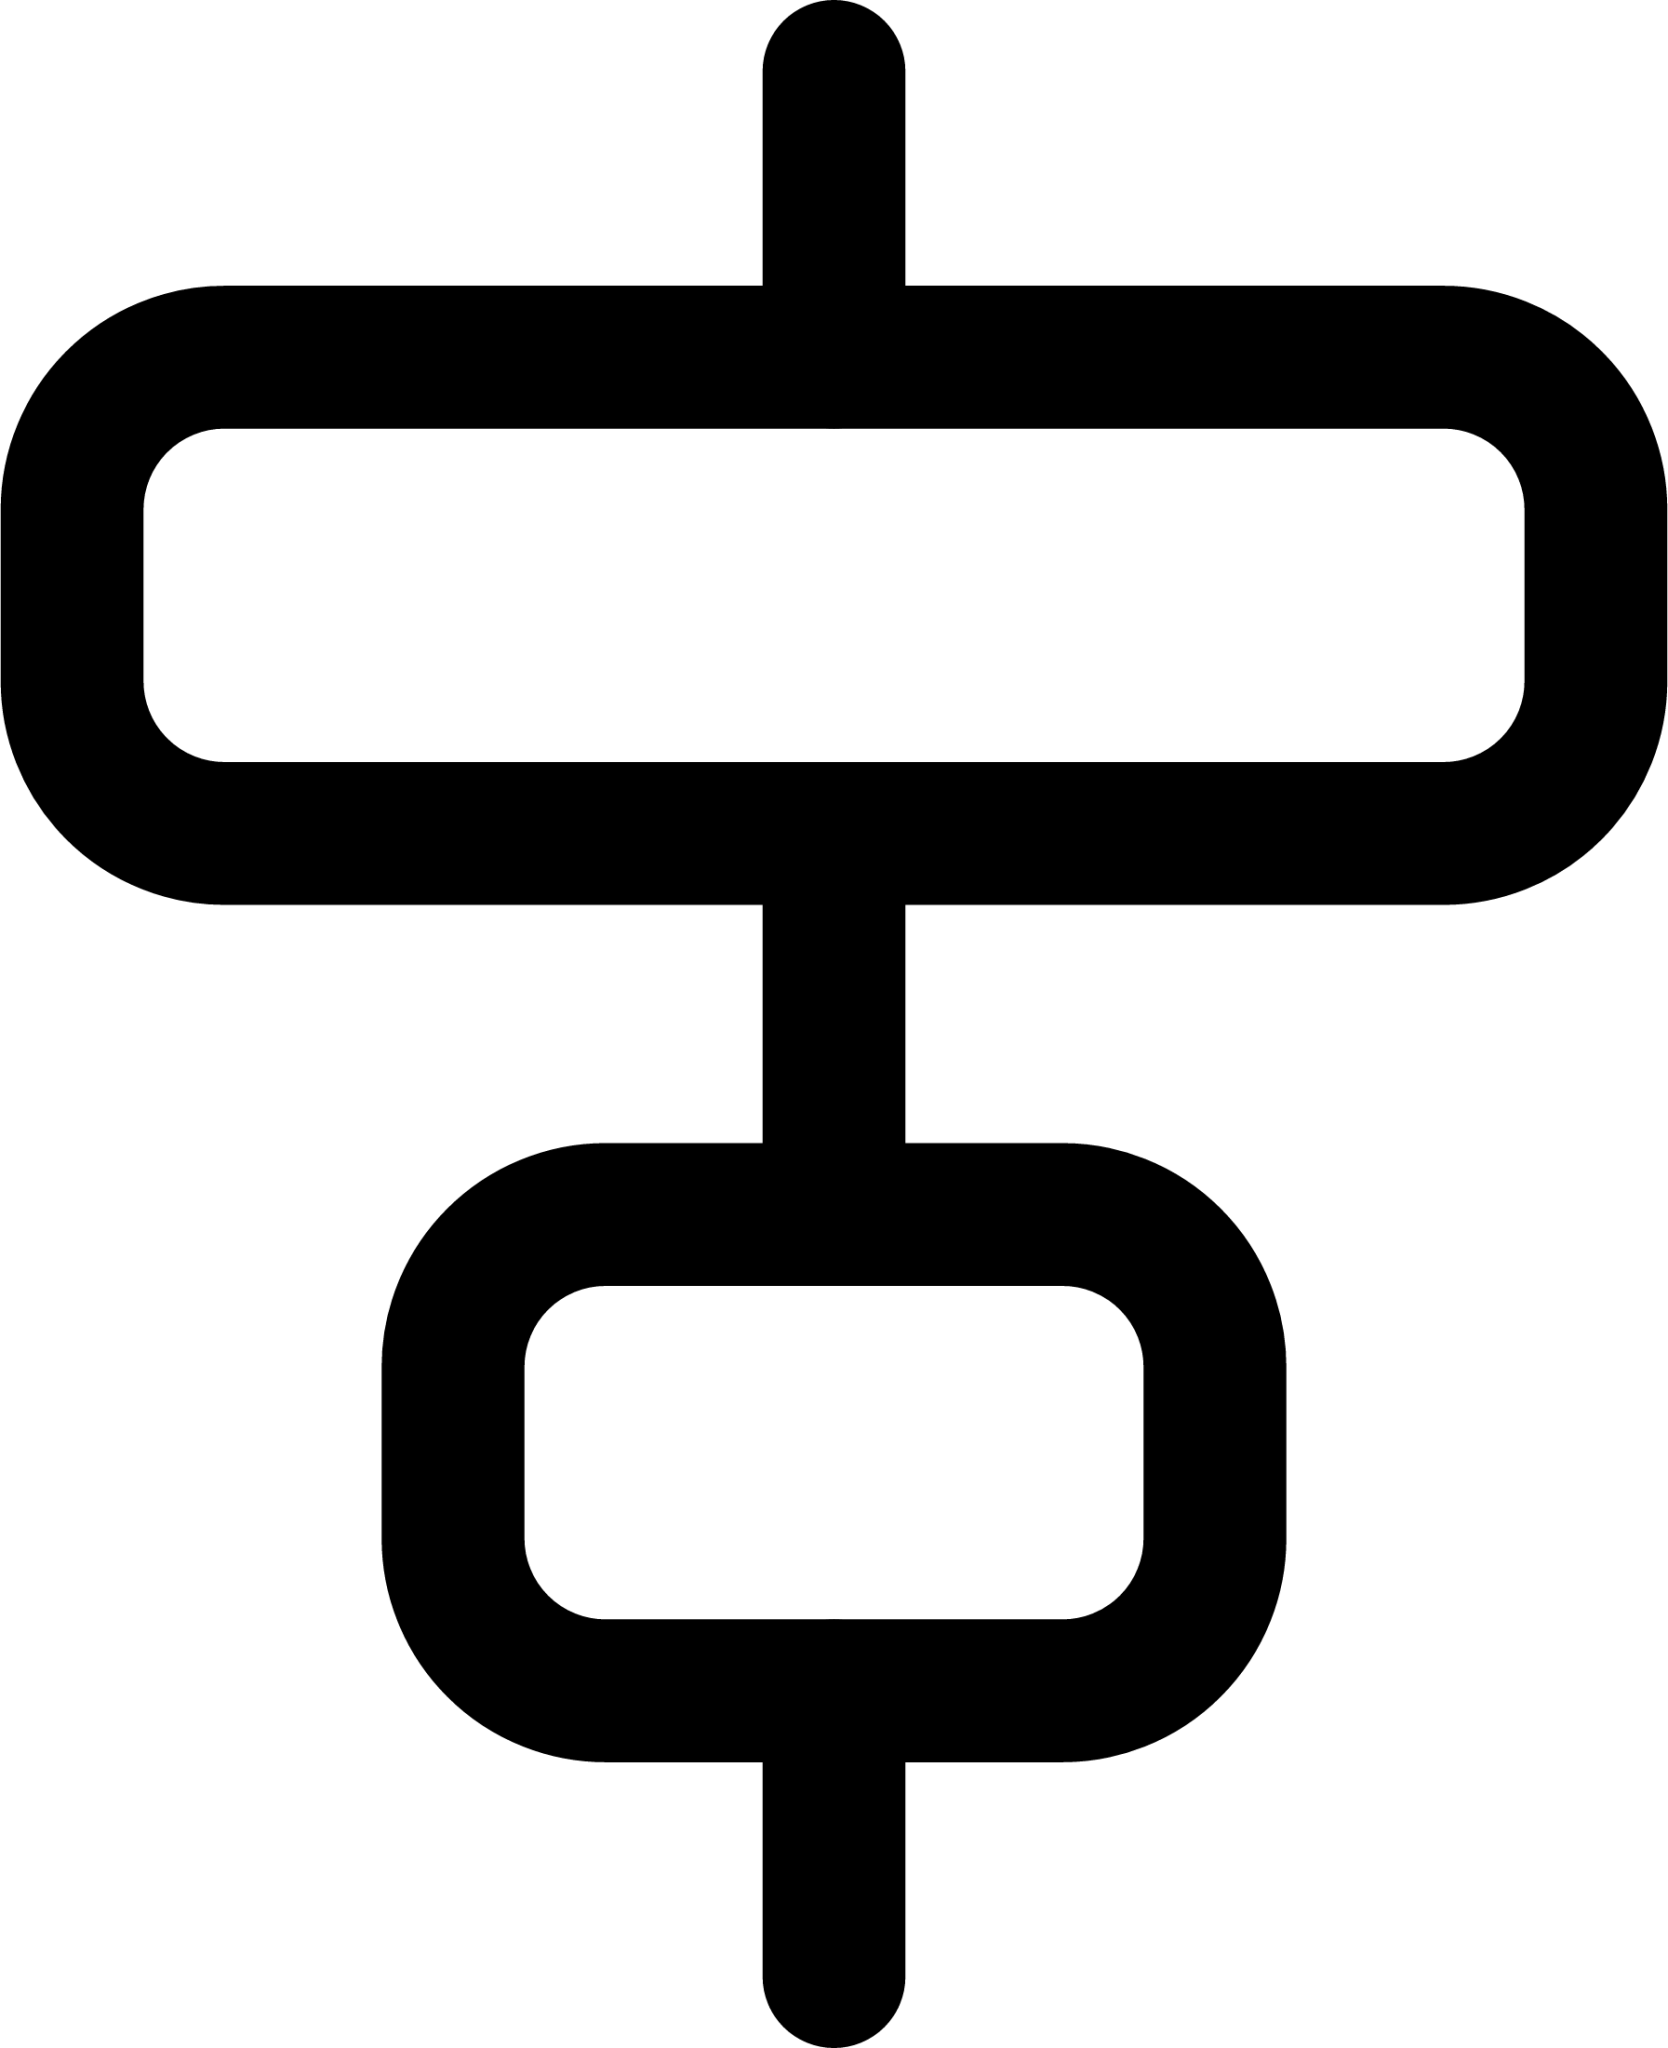 Align horiz center detailed (line) icon